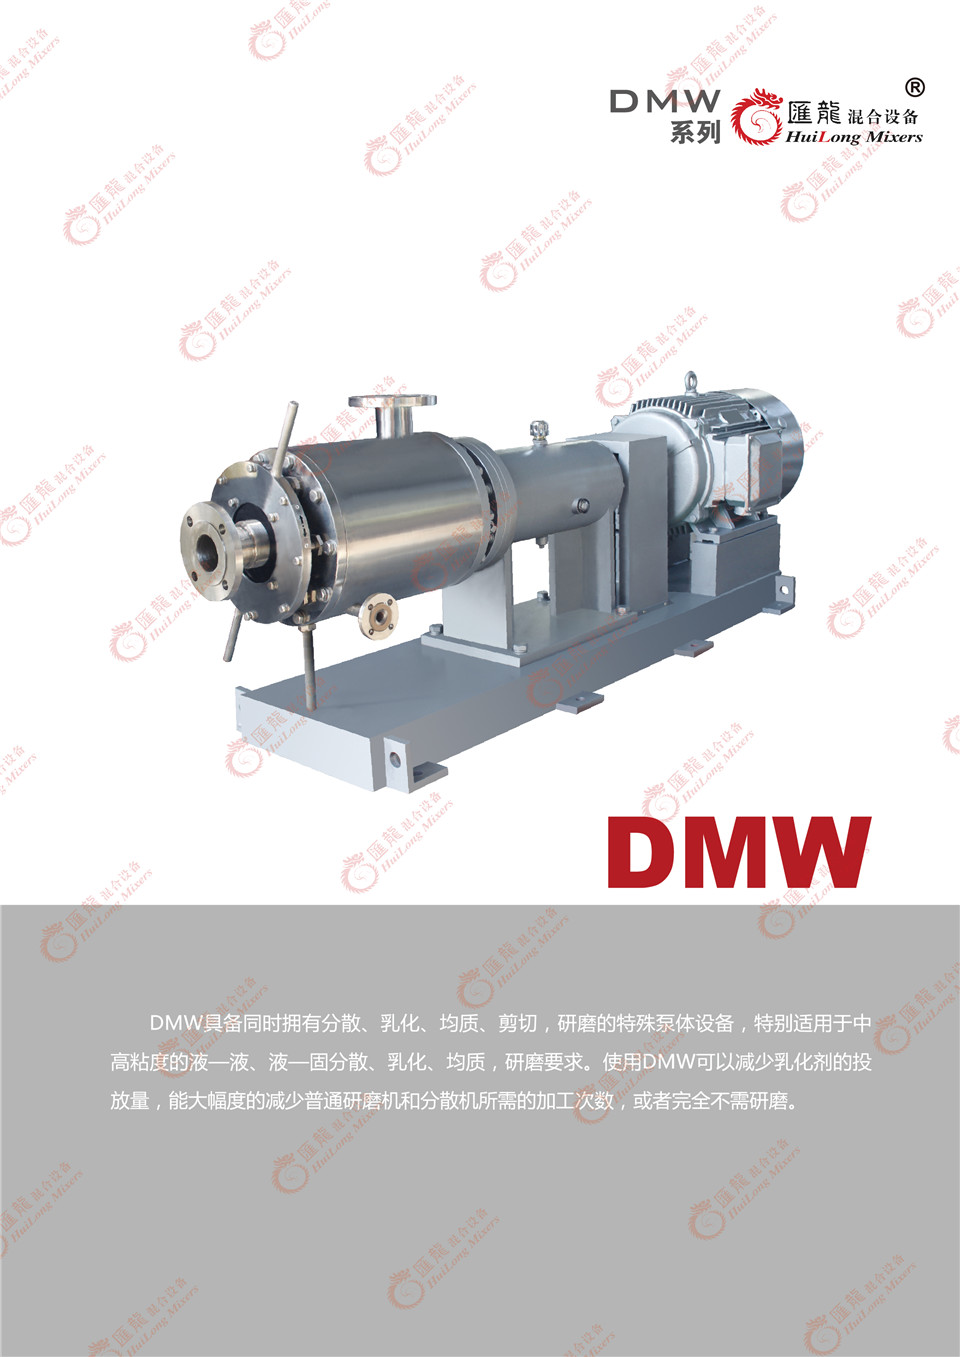 “DMW-普通型乳化机”/